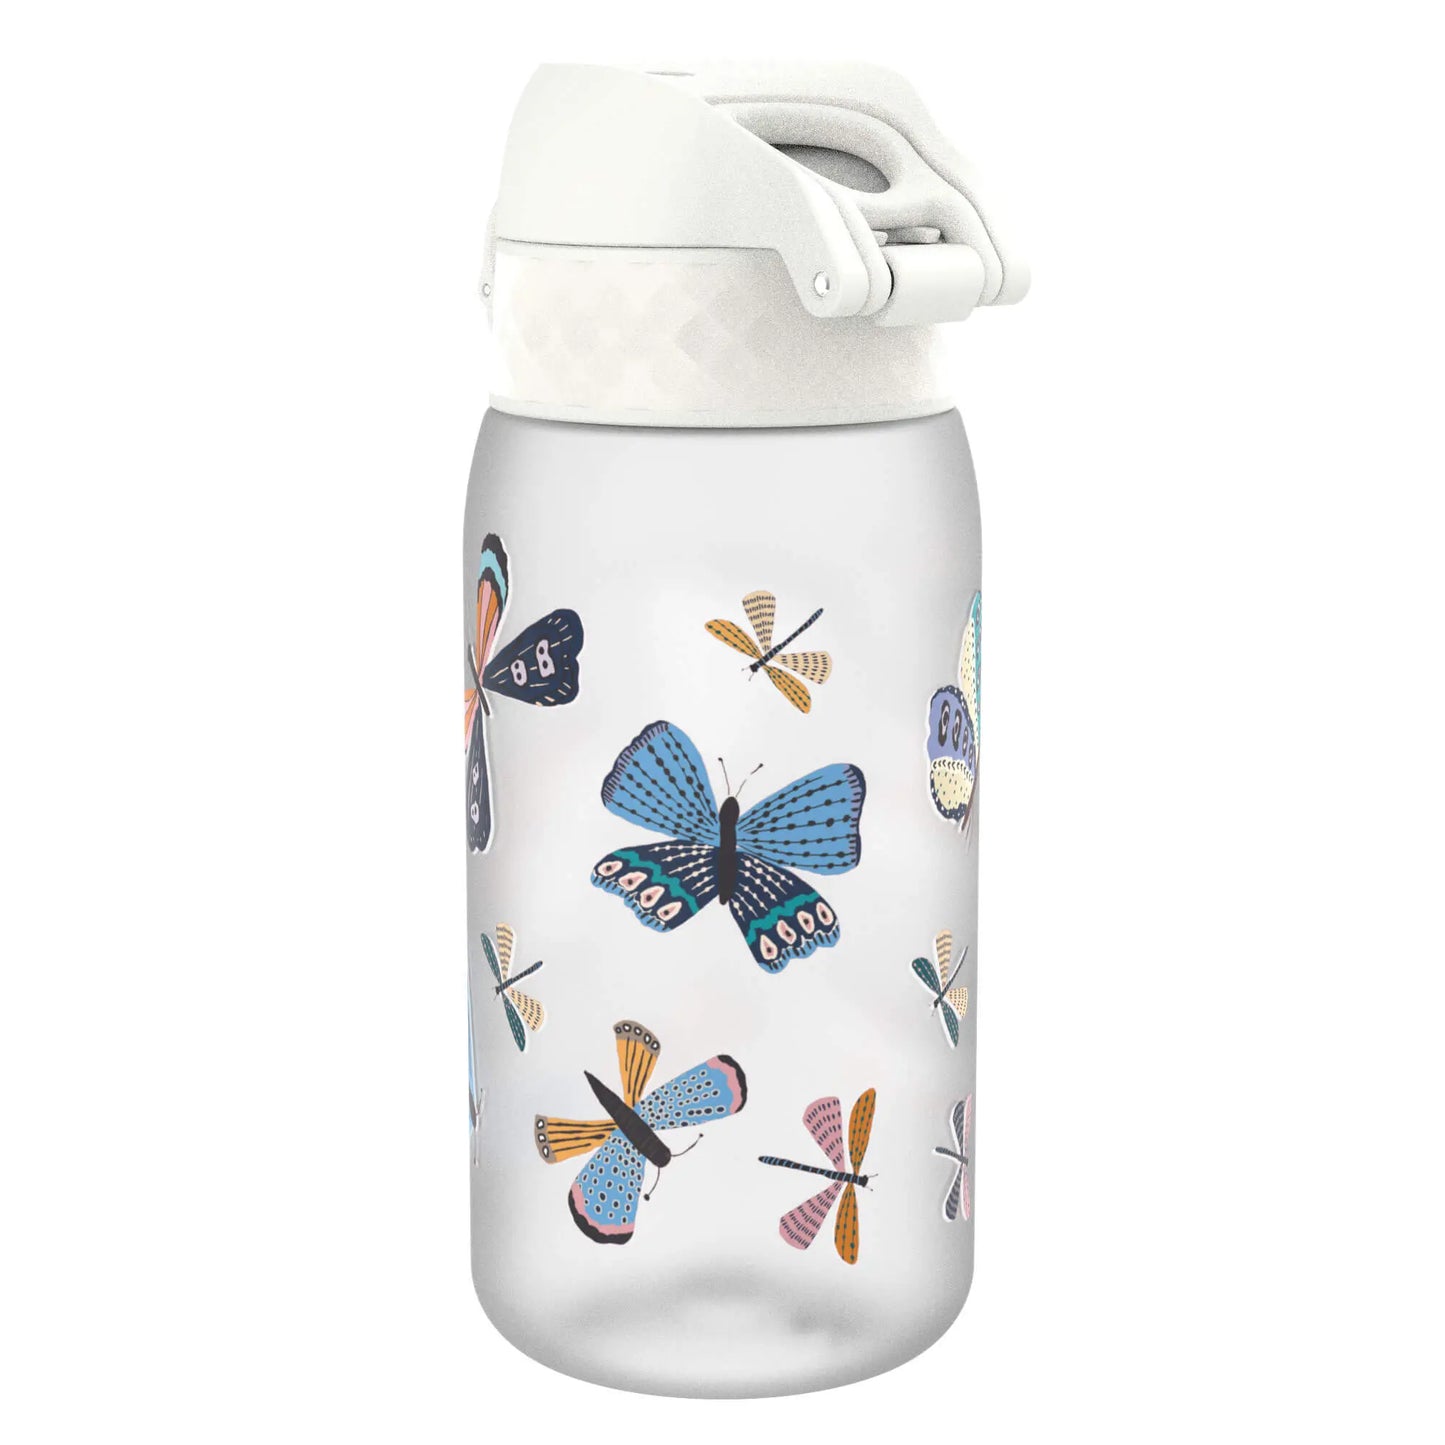 Back View of Ion8 Leak Proof Kids Water Bottle, BPA Free, Butterflies, 400ml (13oz)